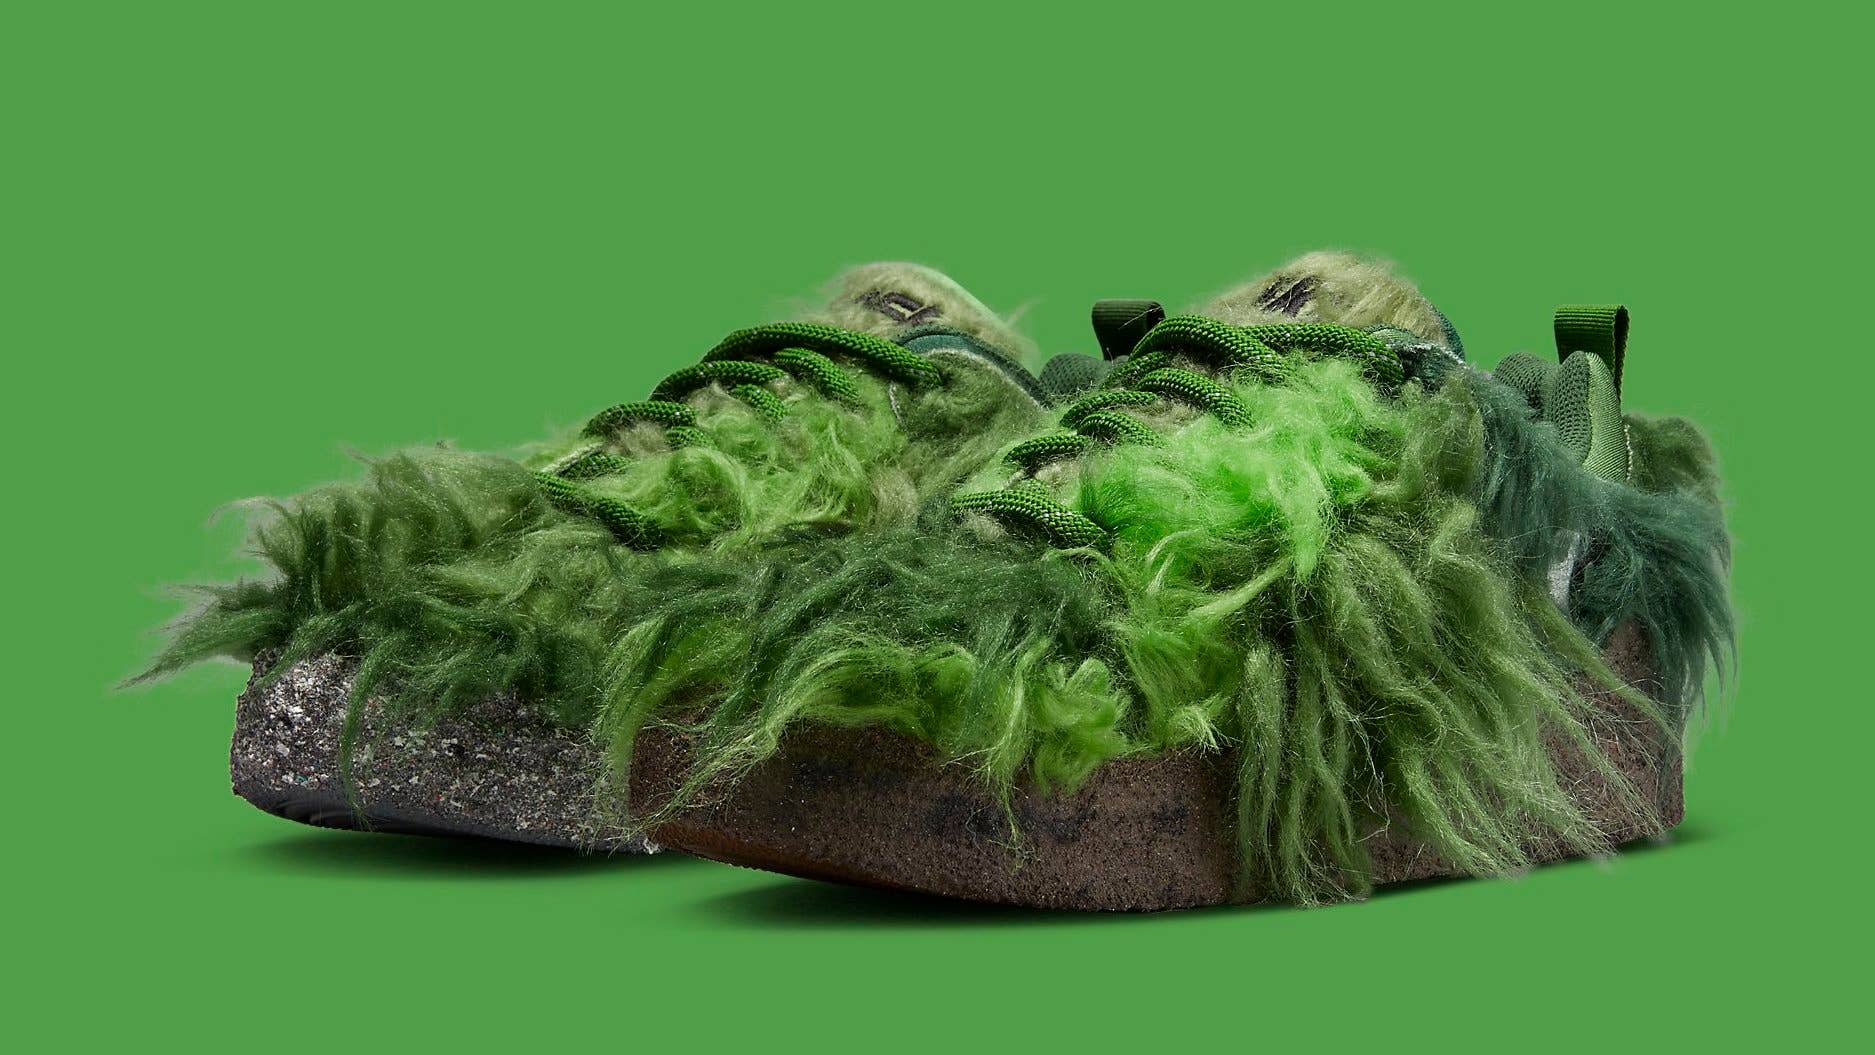 Cactus Plant Flea Market x Nike Go Flea Release Date